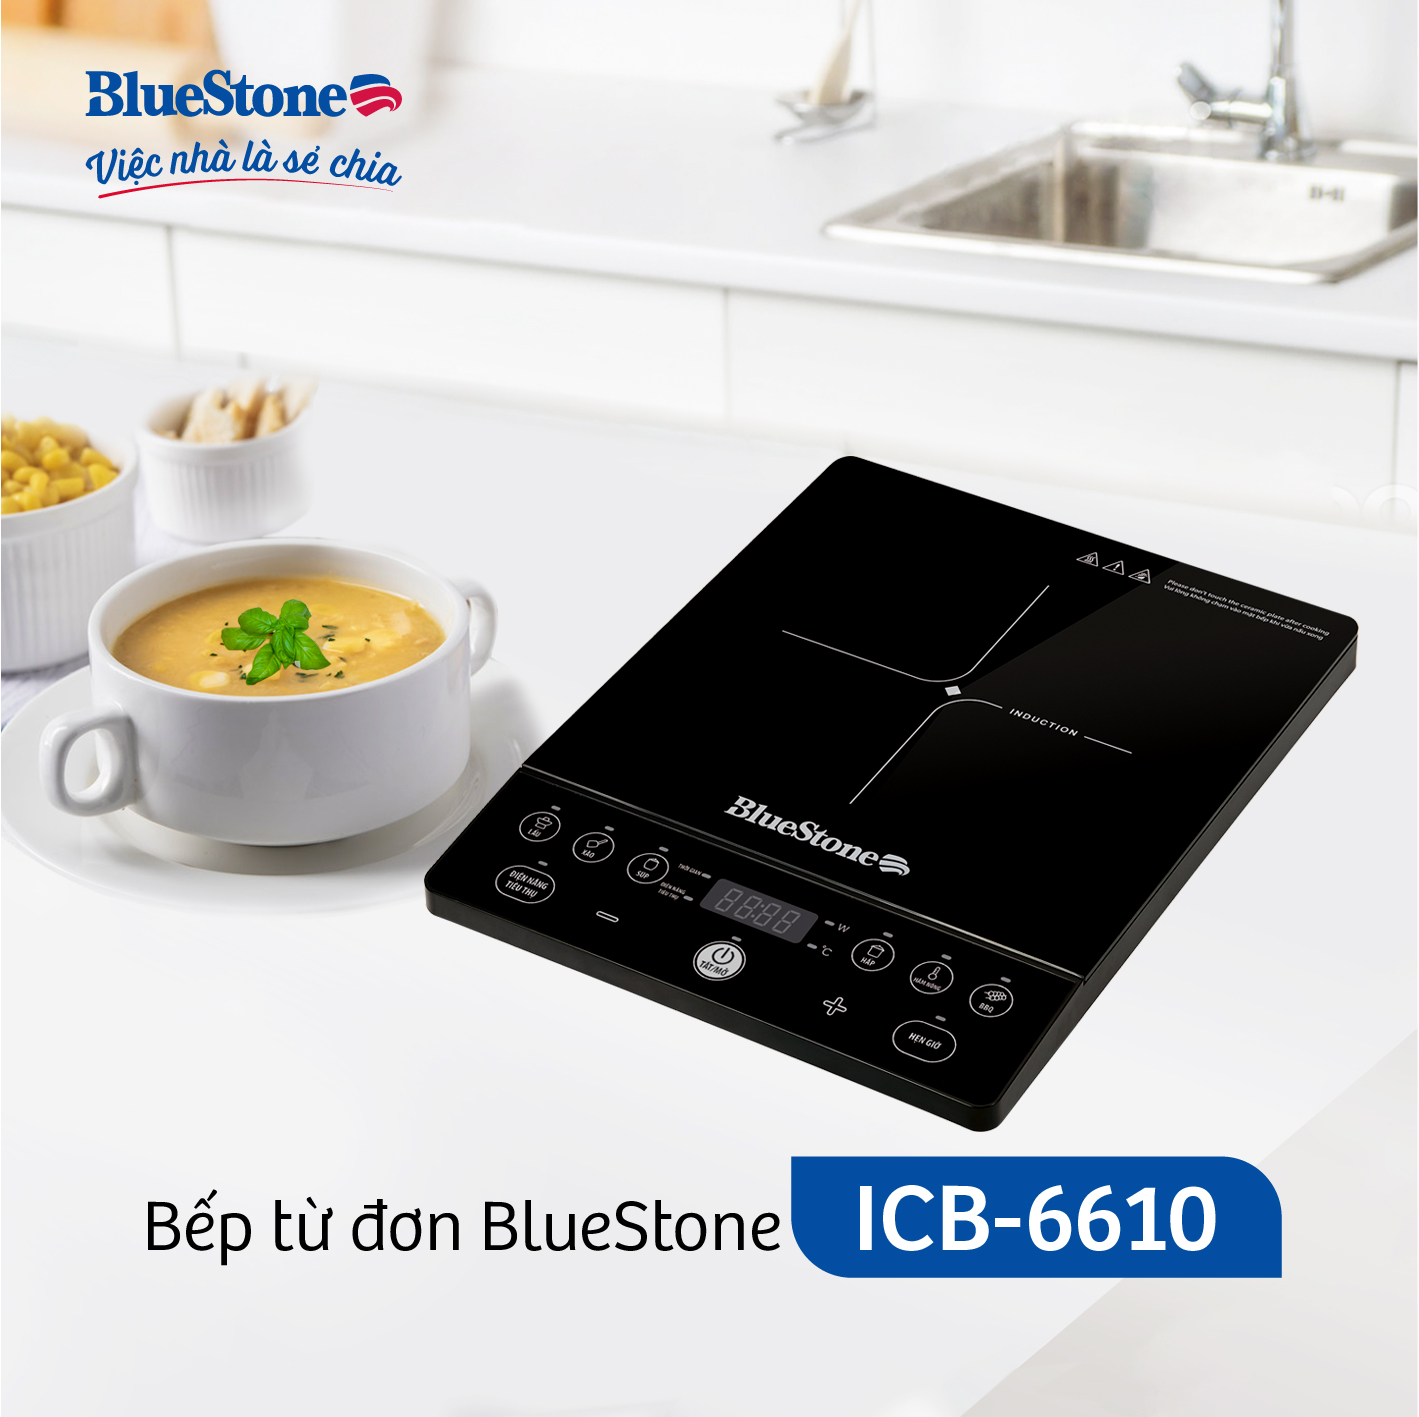 Bếp từ đơn BlueStone ICB-6610 - Công suất 2000W - Tặng kèm nồi - 6 chức năng nấu -Bảo hành...